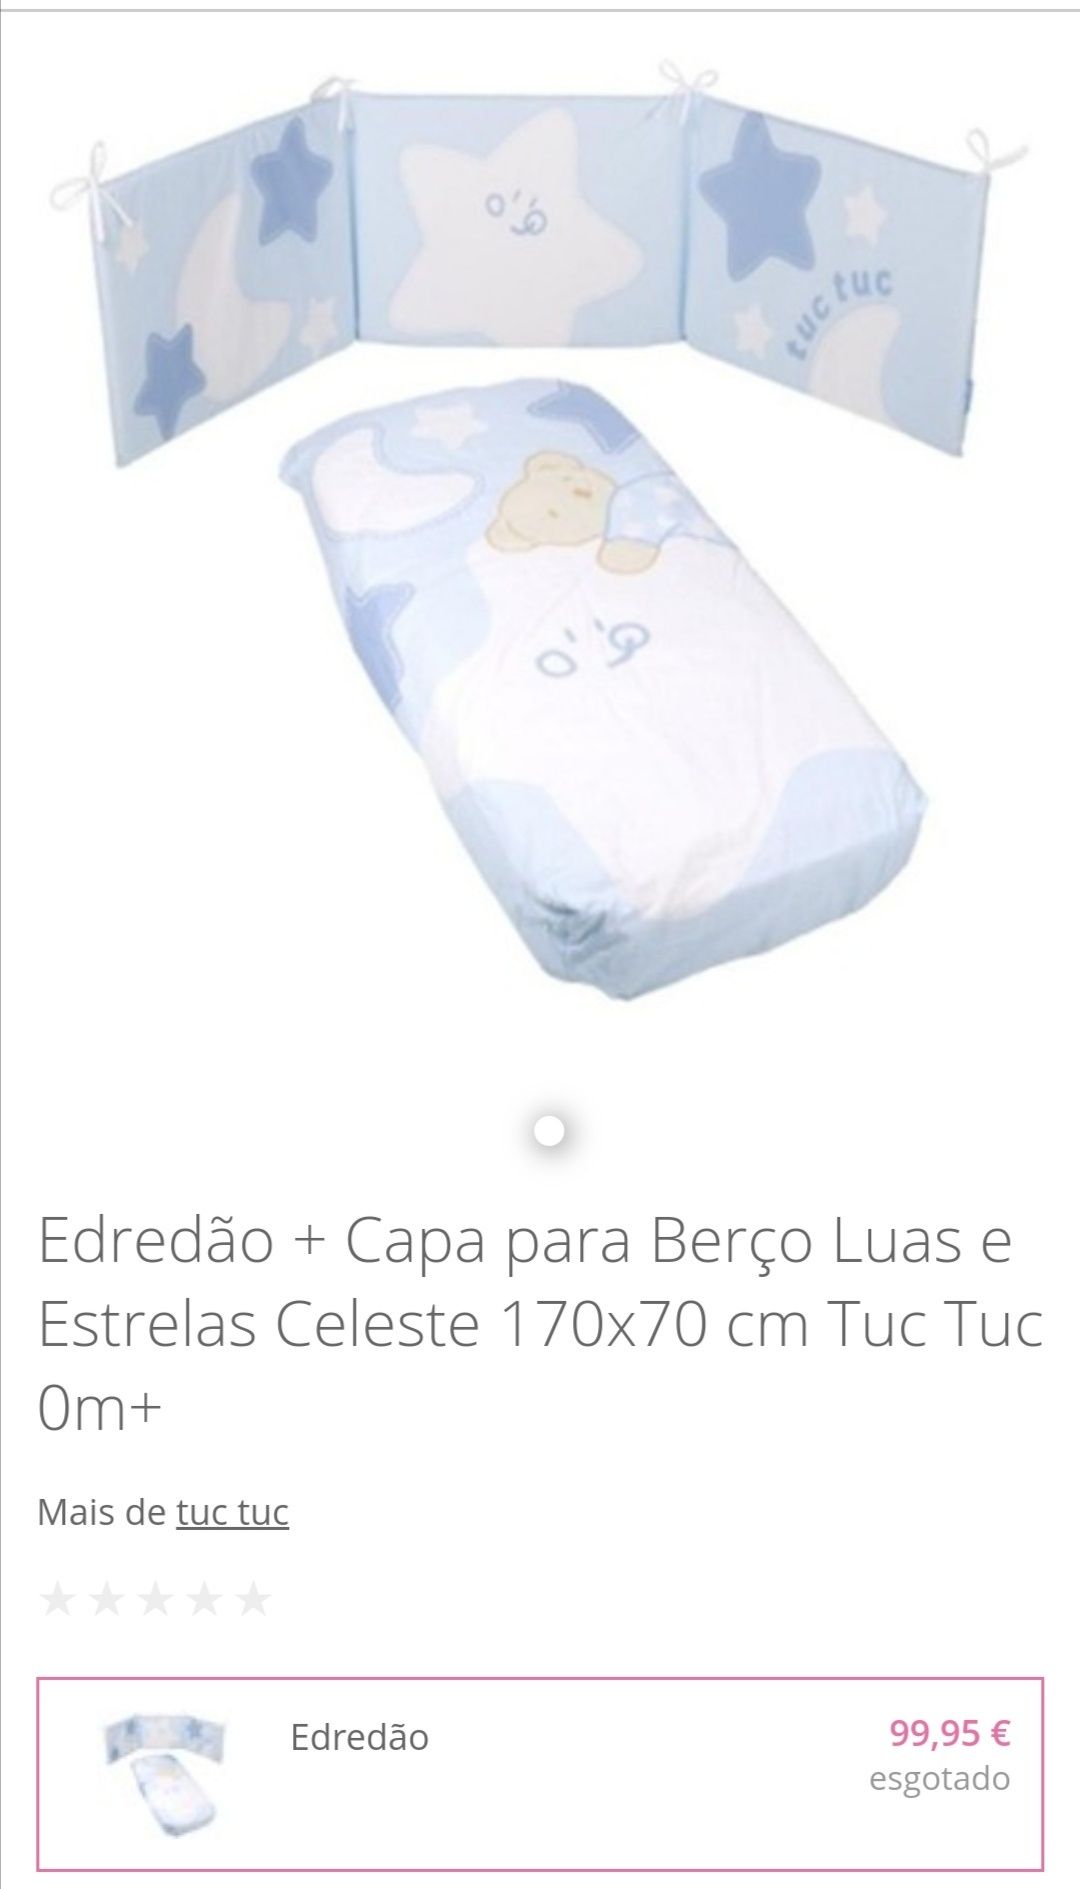 Capa edredom e protector cama de bebé Tuc Tuc